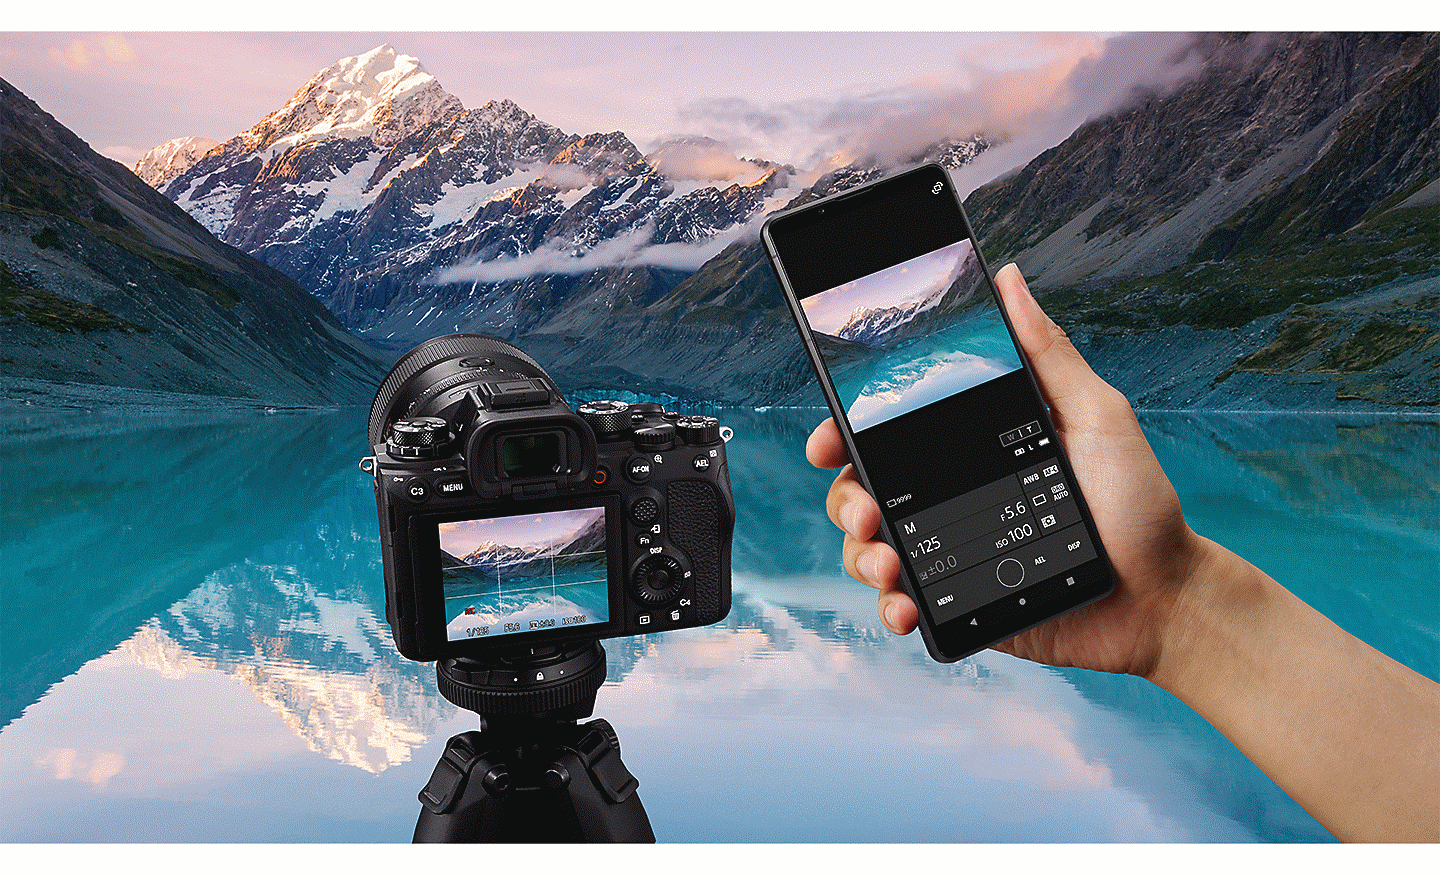 Úchvatná scenérie alpského jezera a na popředí fotoaparát Sony Alpha spolu s přístrojem Xperia PRO-I